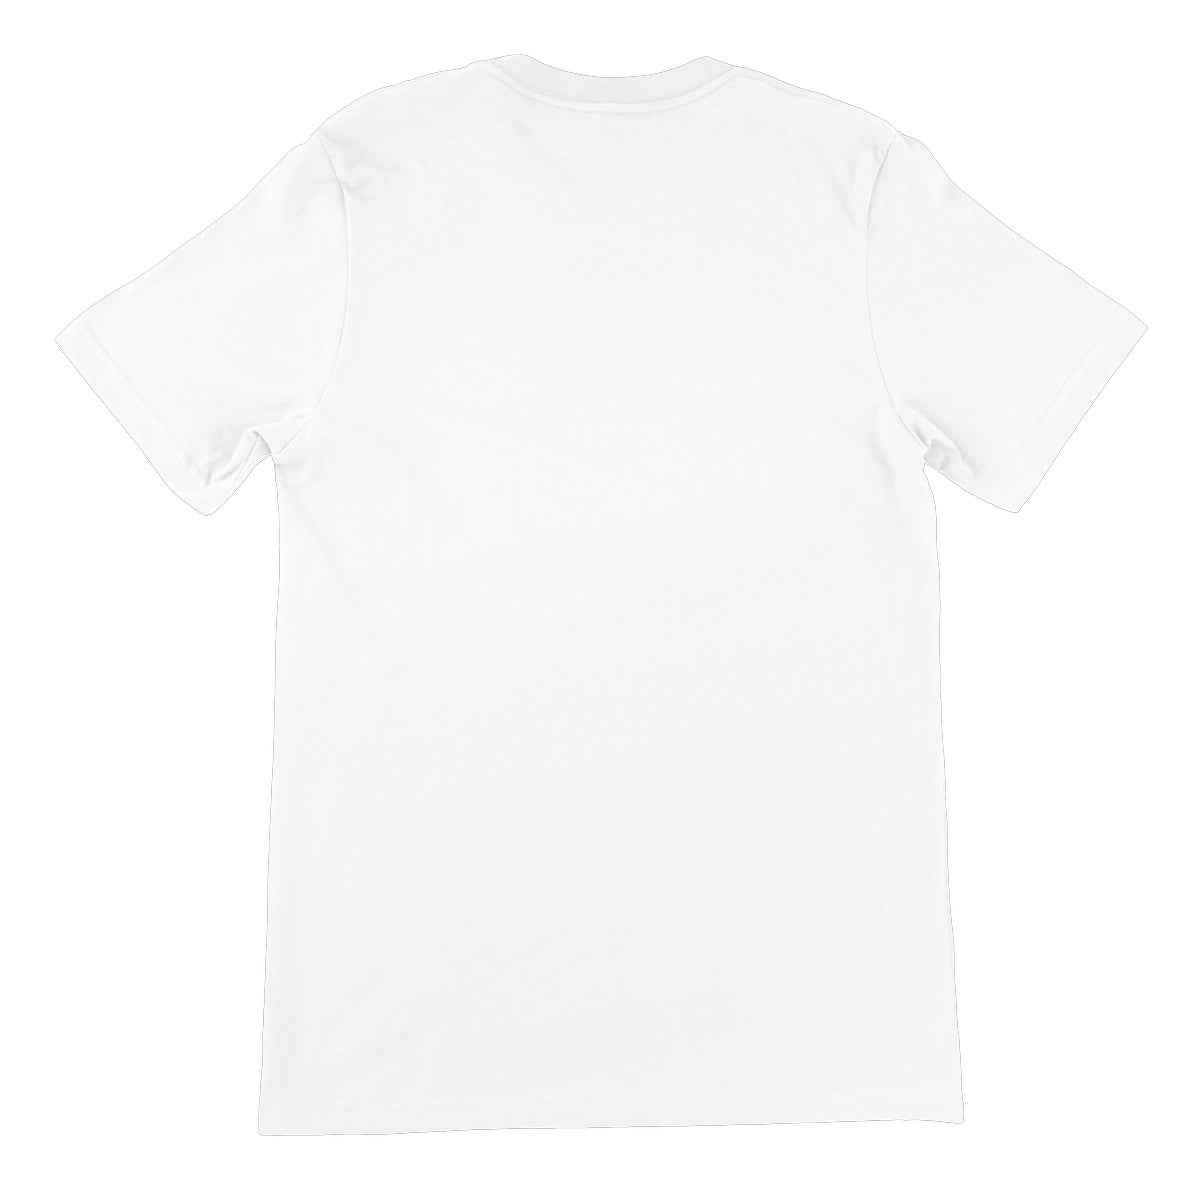 Let's Wrestle Ireland Unisex Short Sleeve T-Shirt